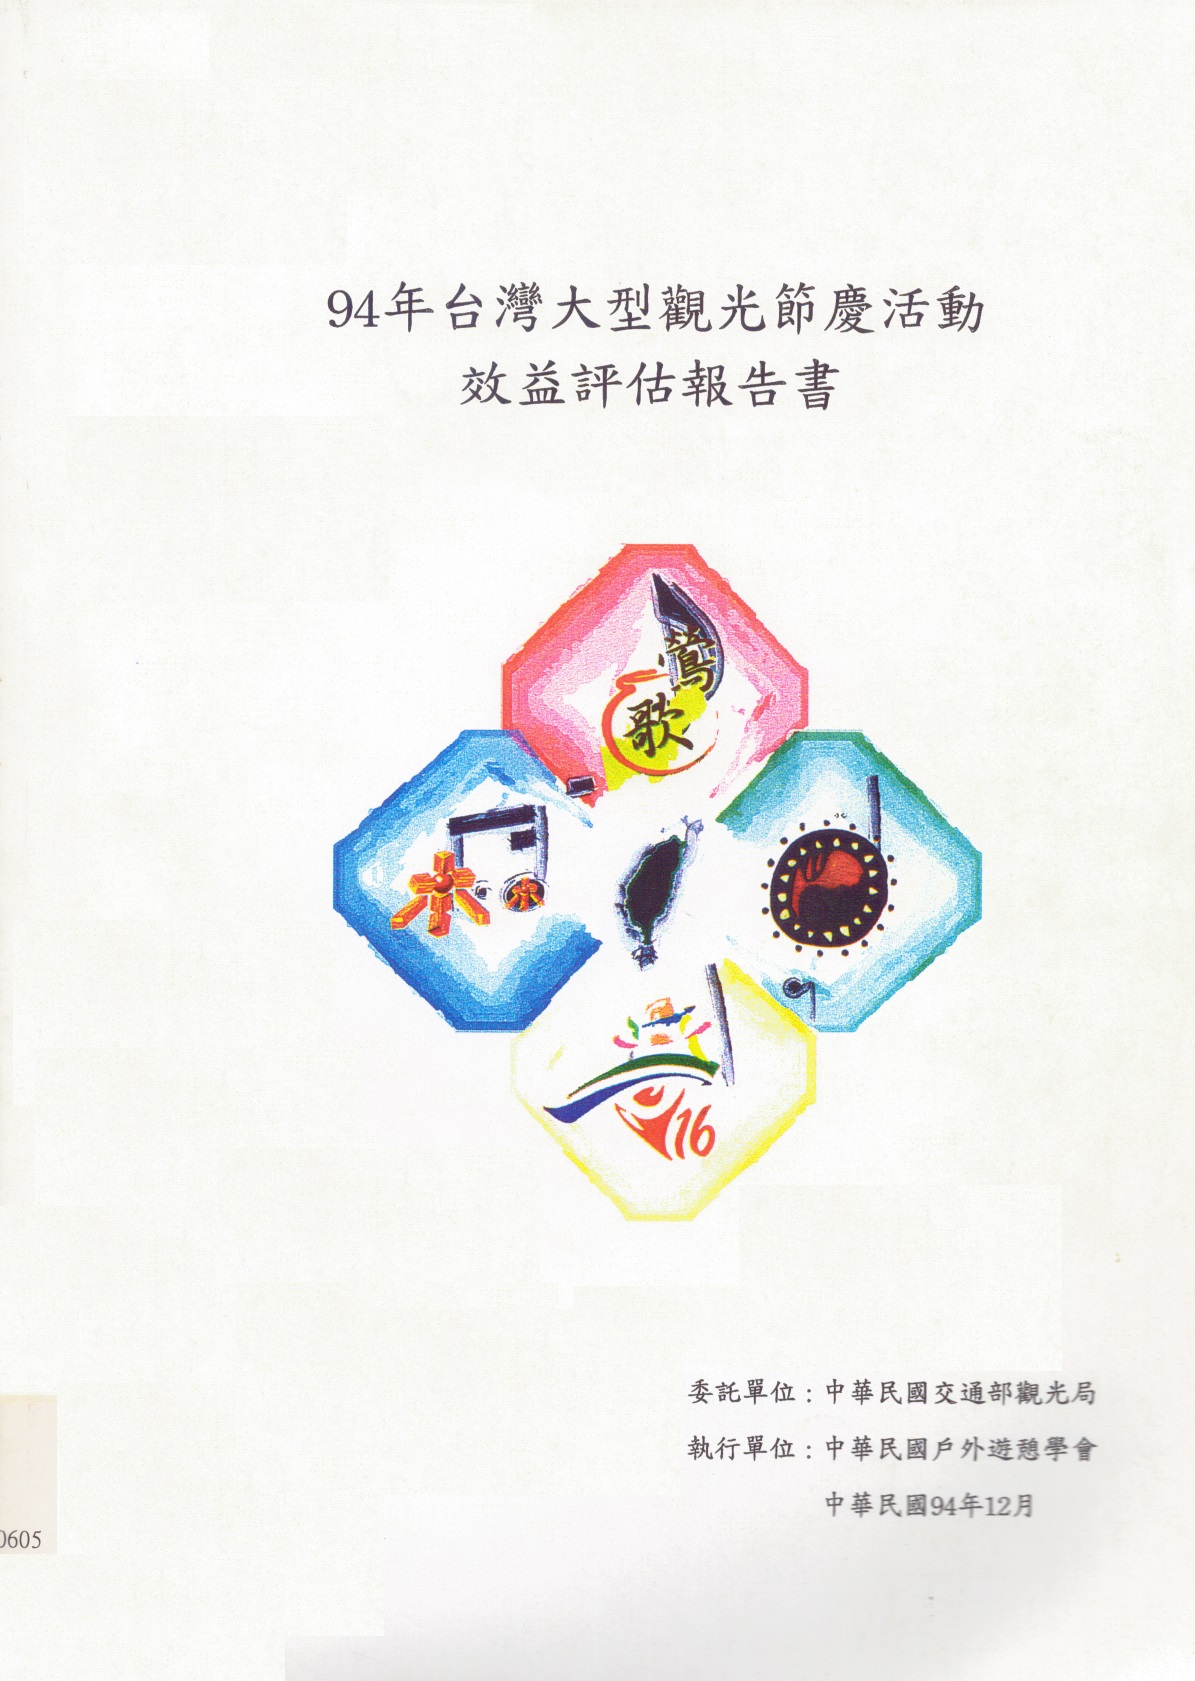 94年台灣大型觀光節慶活動效益評估報告書